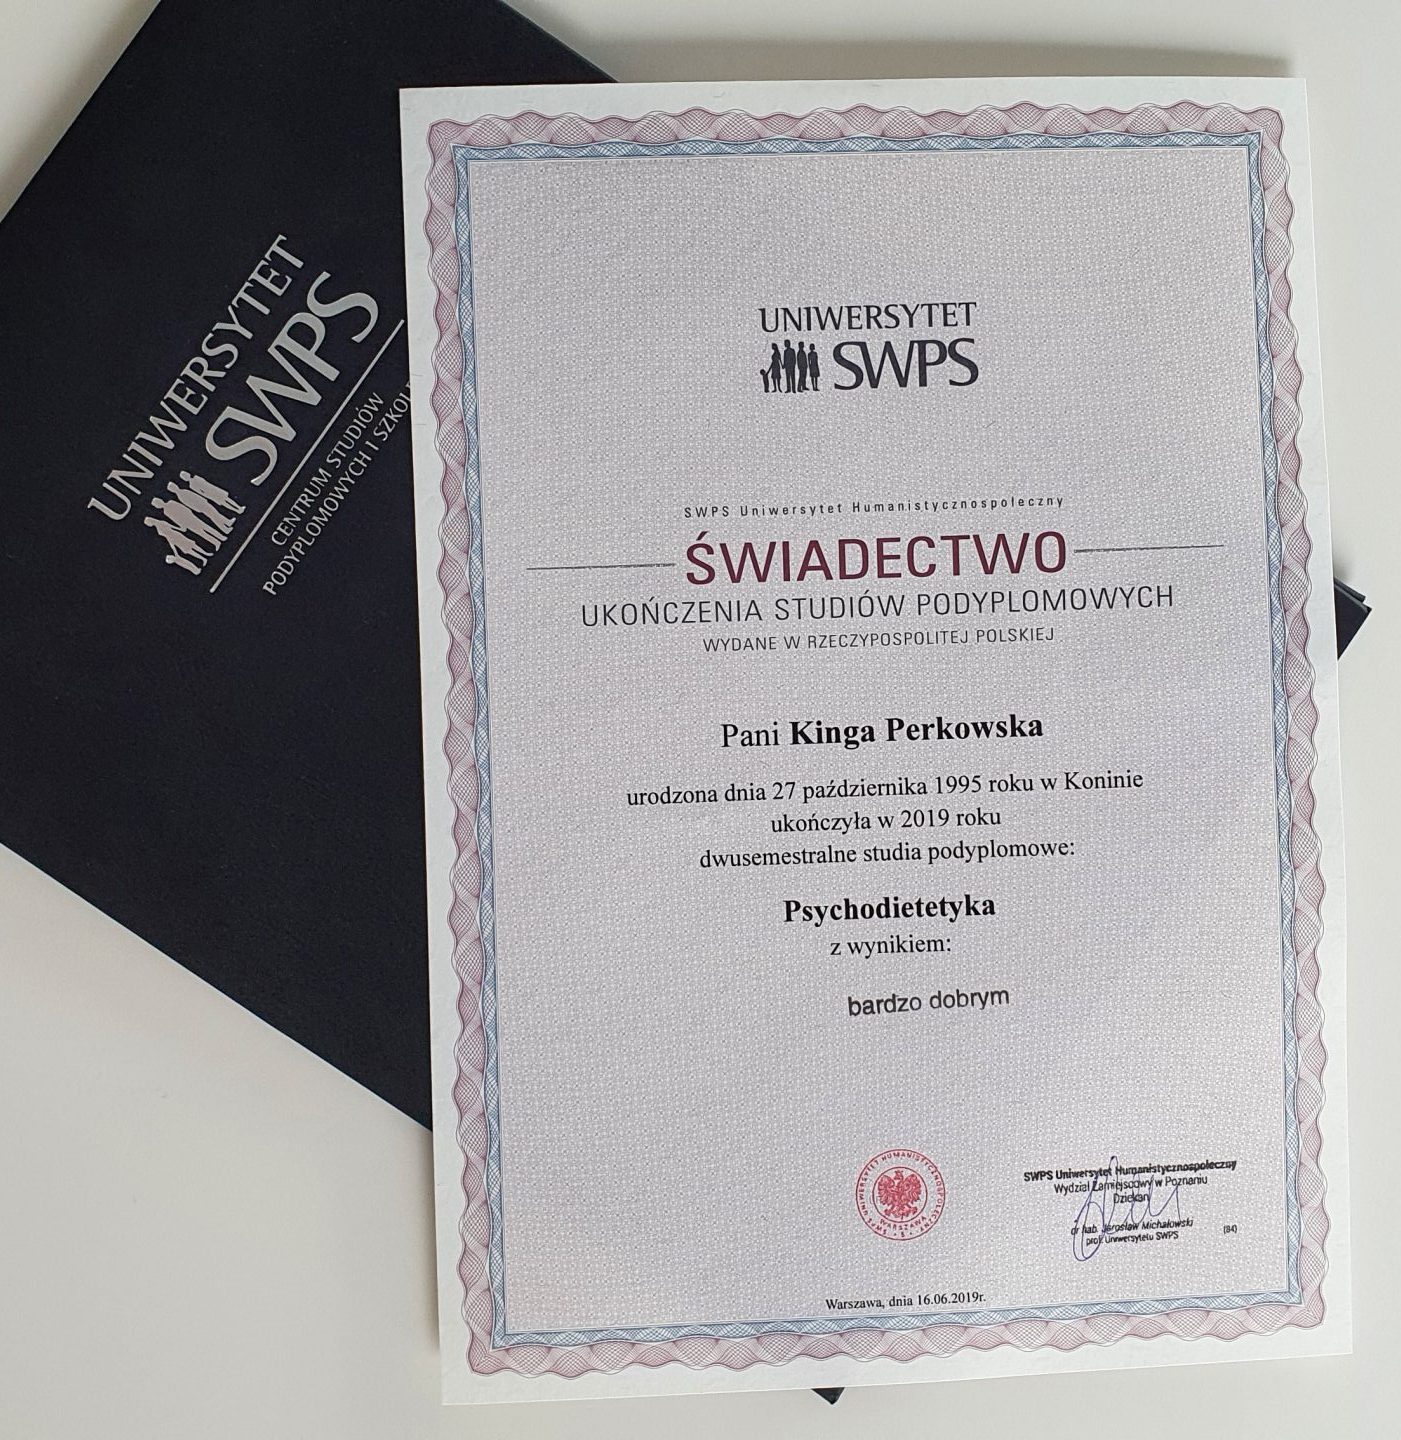 Świadectwo/dyplom ukończenia studiów podyplomowych Uniwersytet SWPS, kierunek psychodietetyka